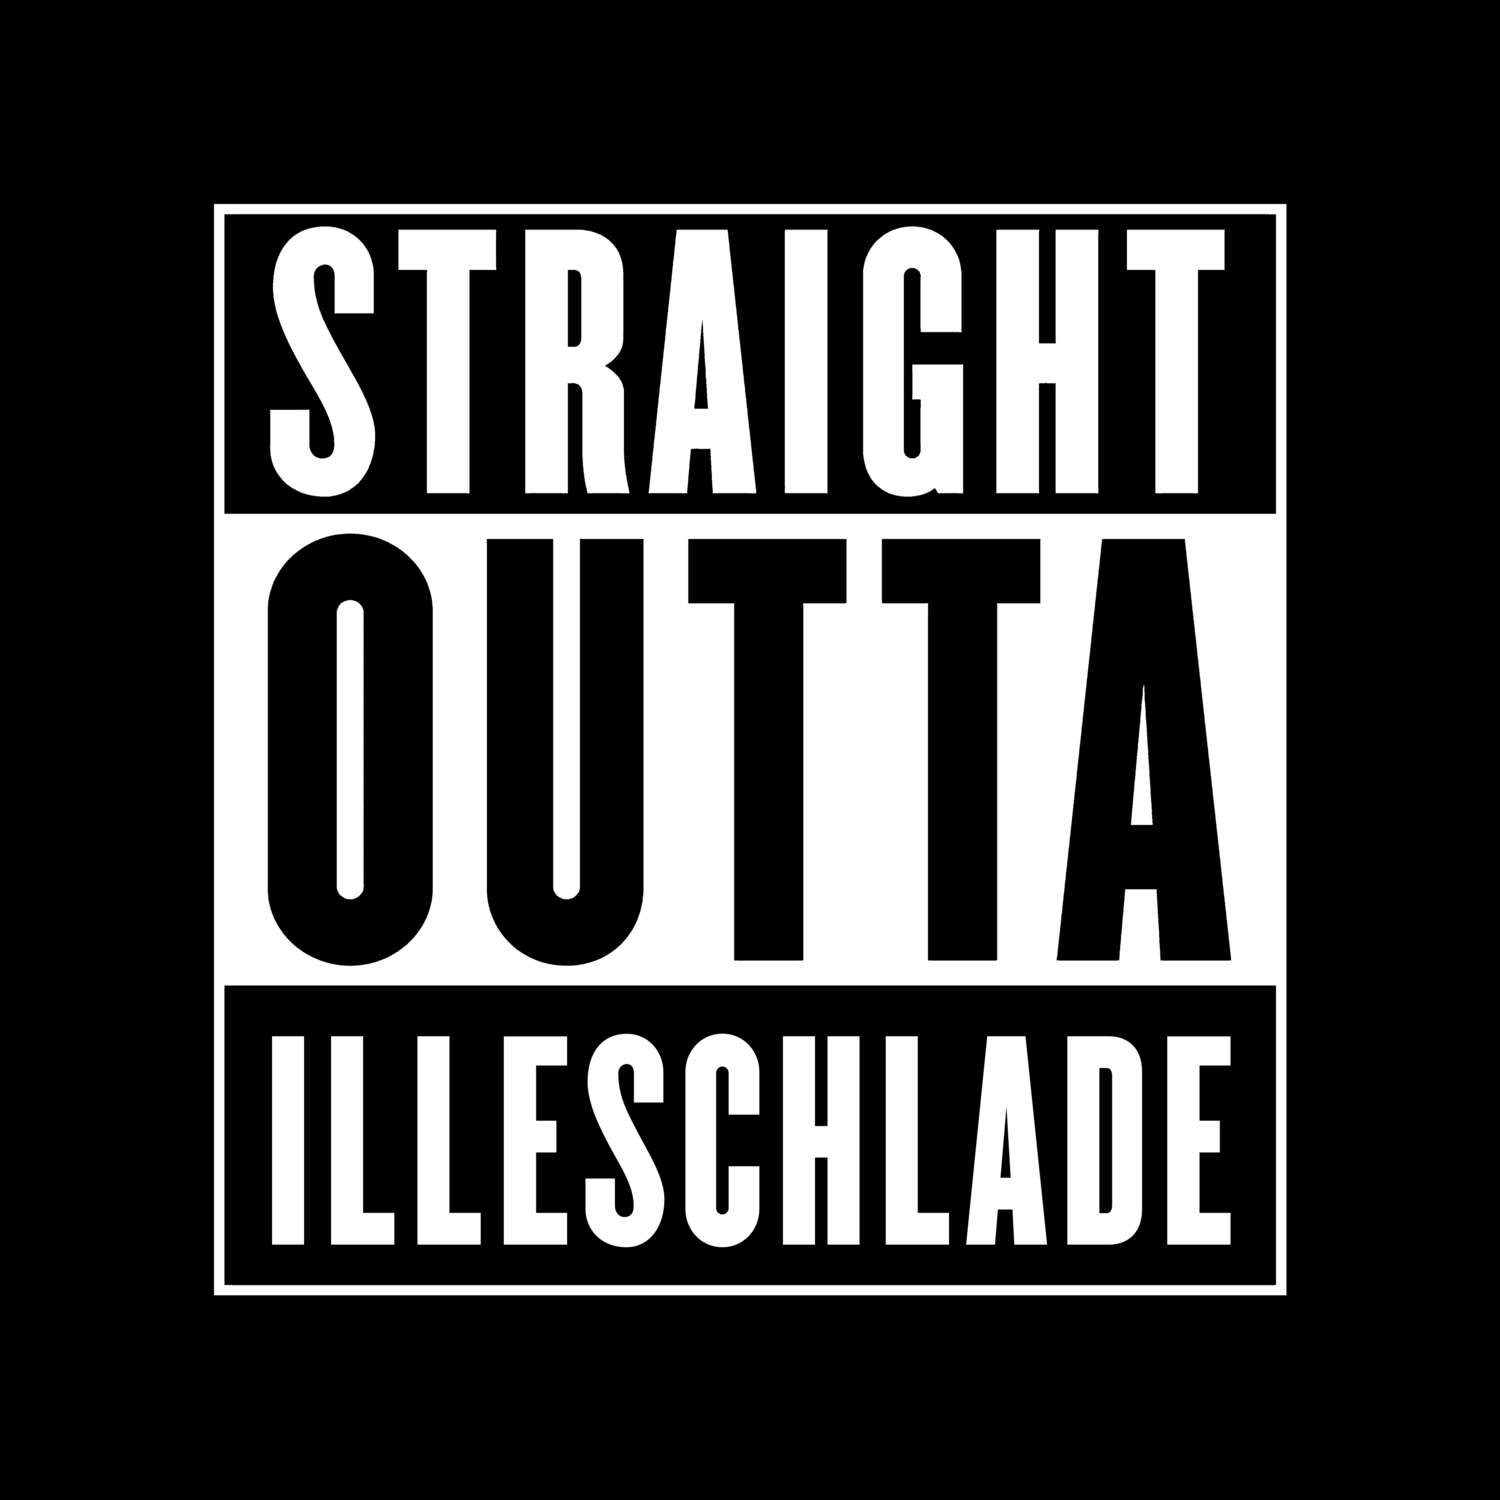 Illeschlade T-Shirt »Straight Outta«